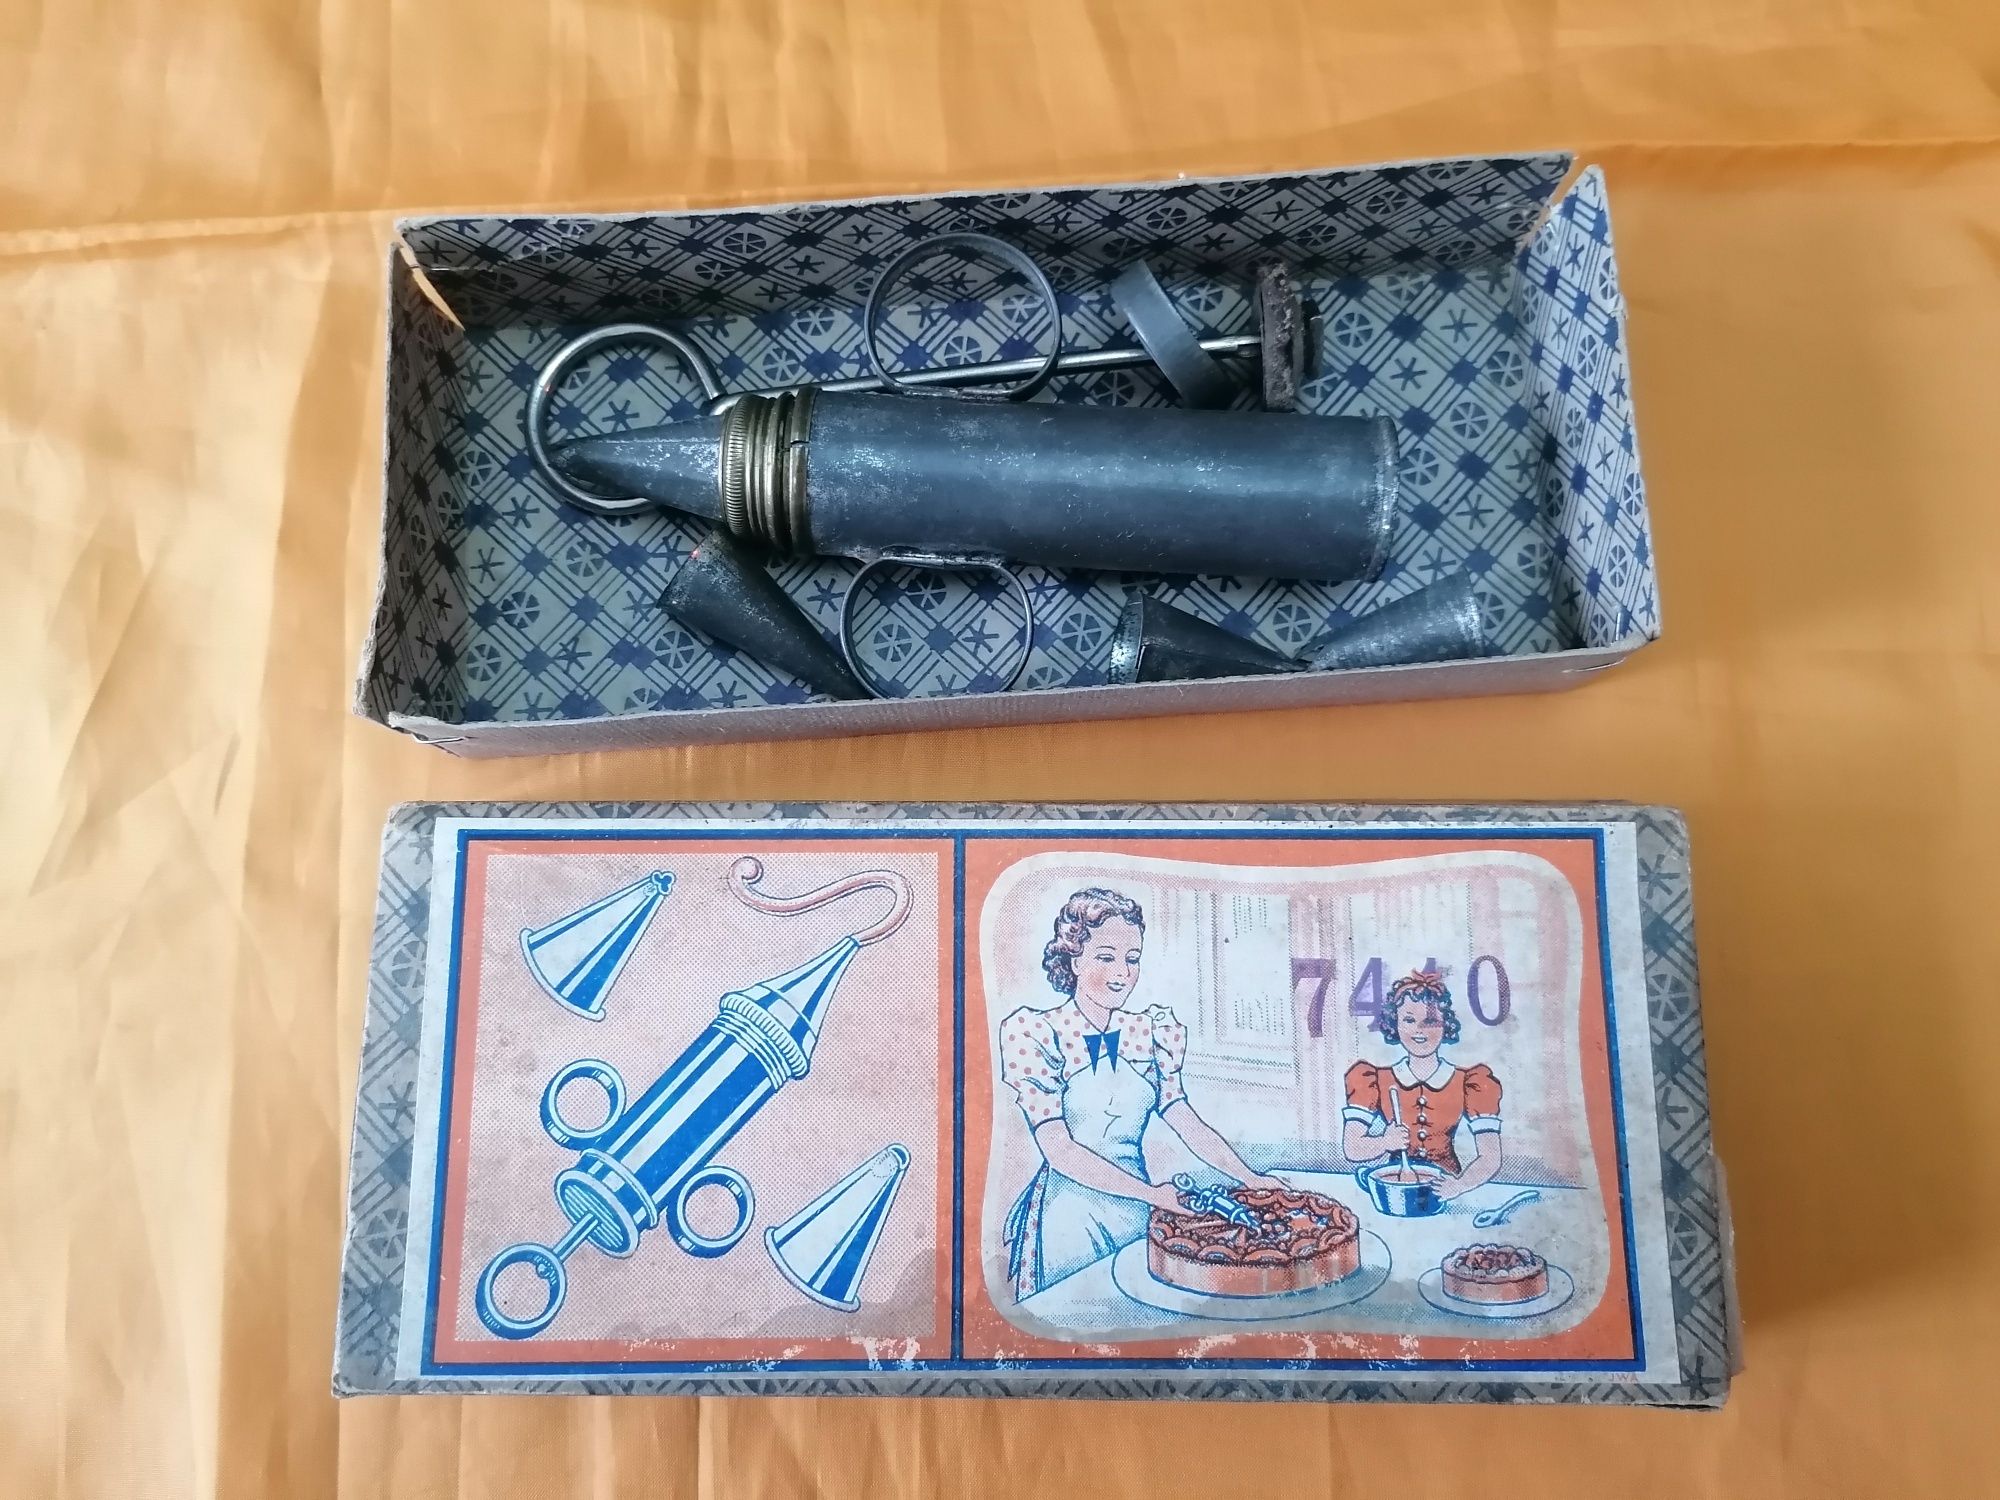 Dispozitiv/pistol vechi de ornat torturi 1950 în cutia originala